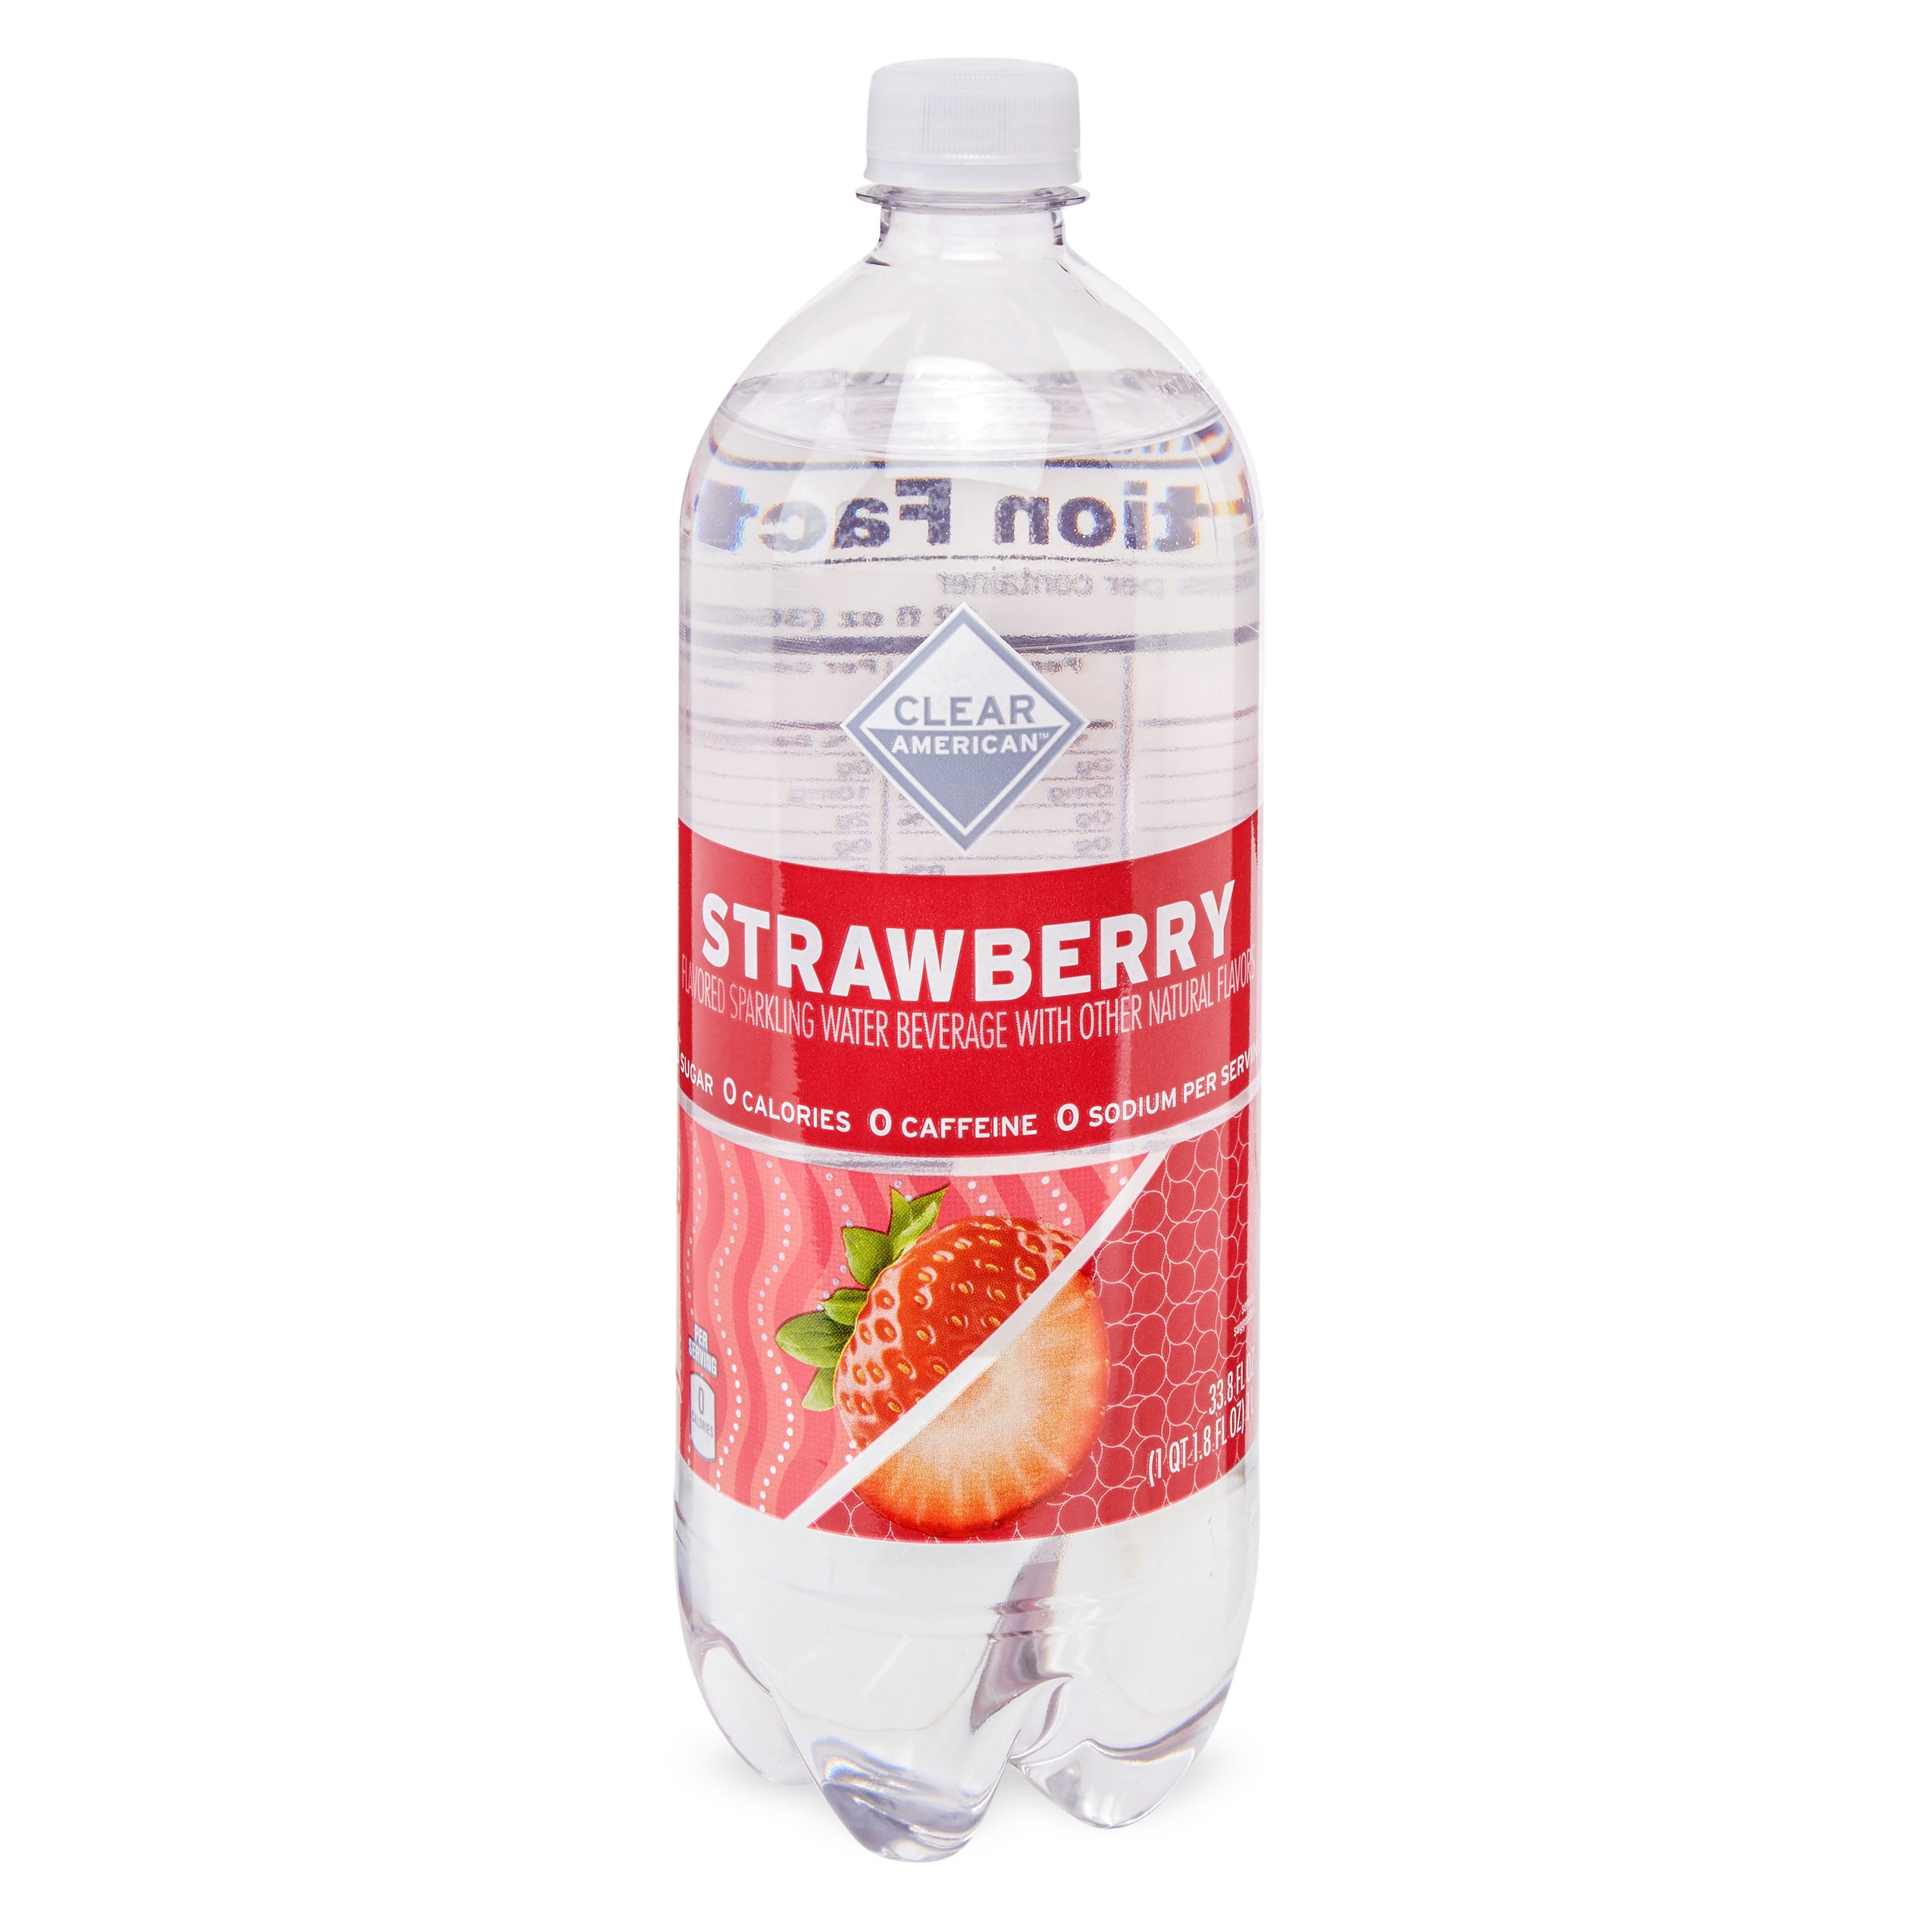 Clear American Sparkling Water, Strawberry, 33.8 Fl Oz - Walmart.com